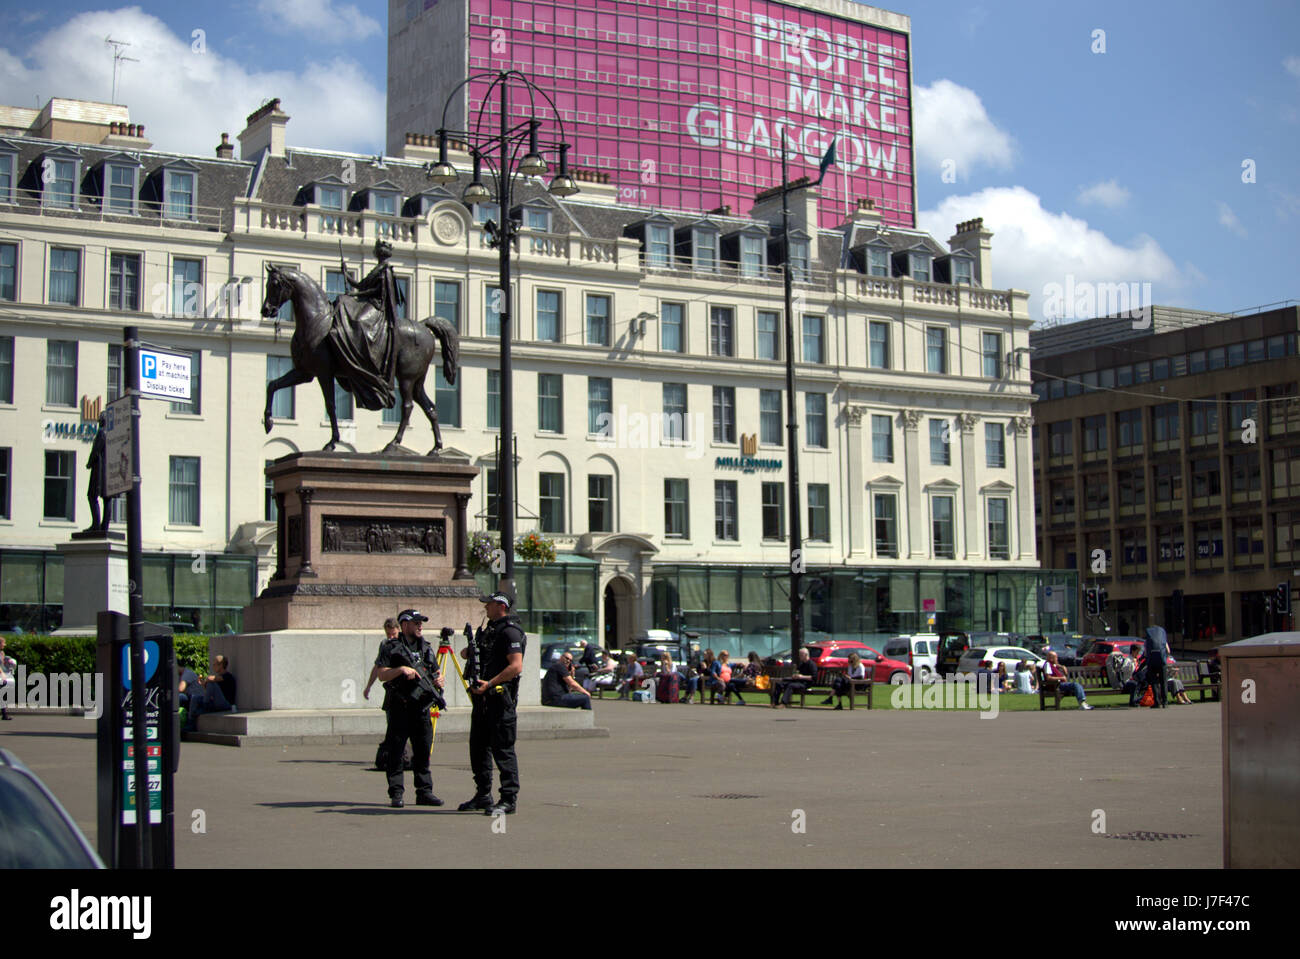 Glasgow, Escocia, Reino Unido. 25 de mayo de 2017. Policías armados patrullan el centro de Glasgow como el sol brilla Crédito: Gerard ferry/Alamy Live News Foto de stock